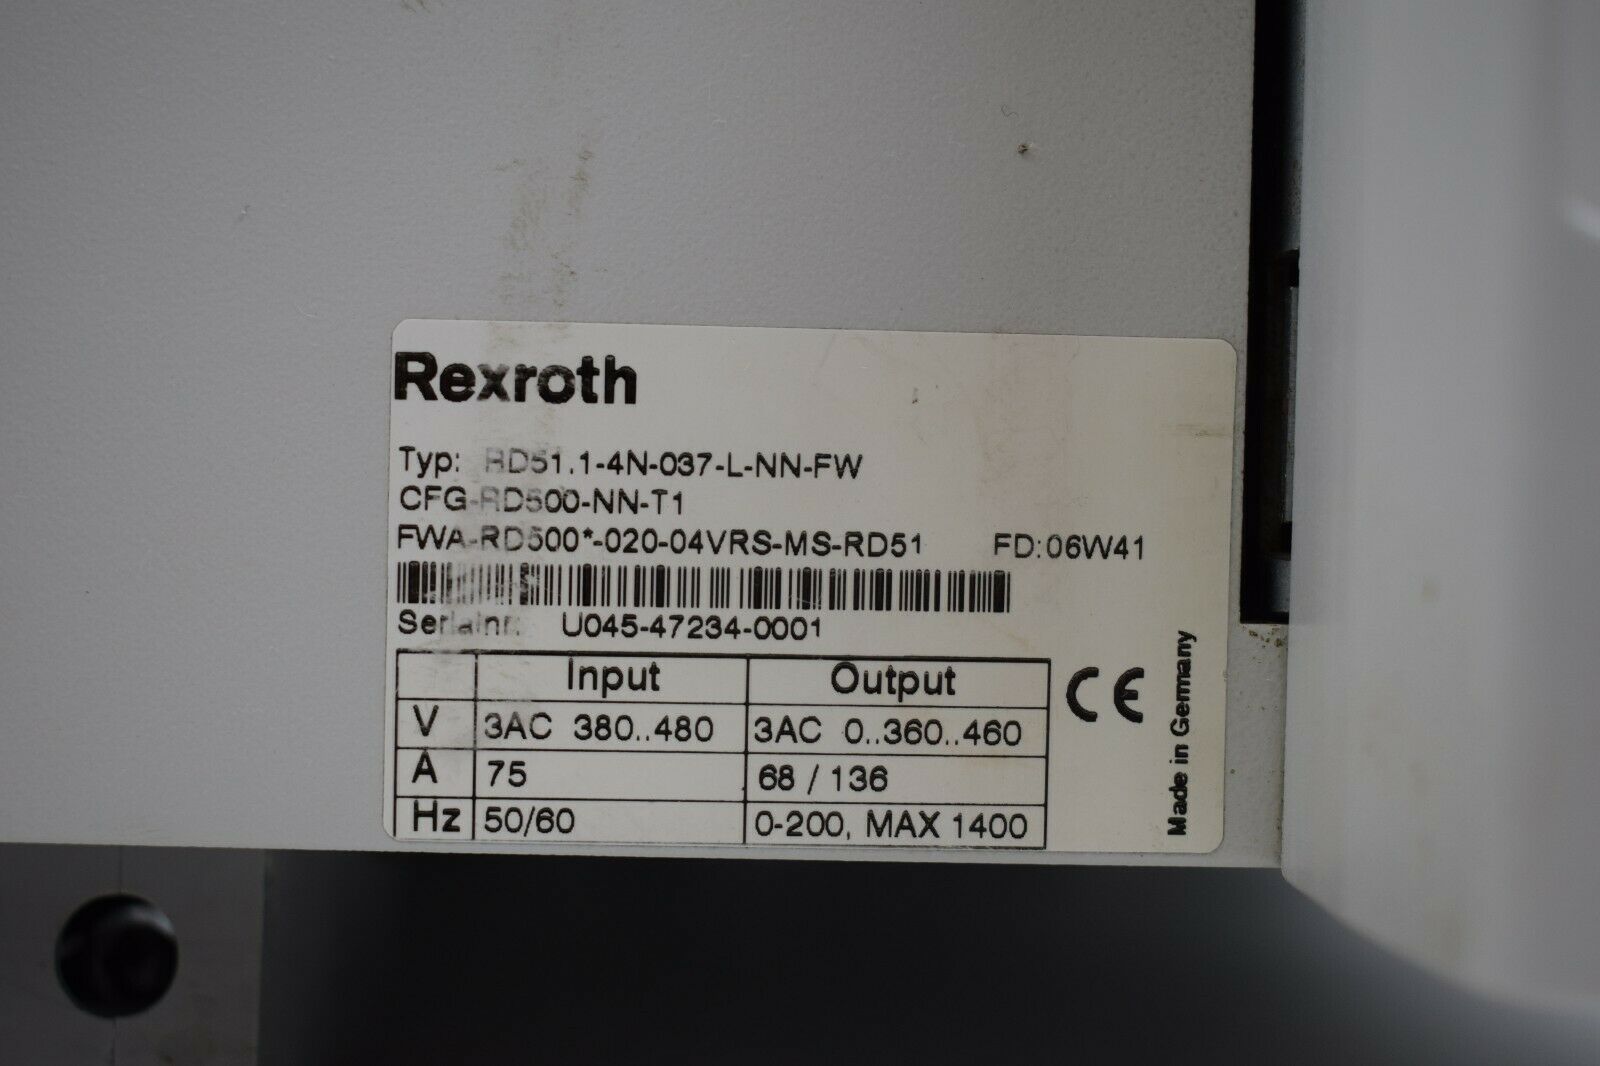 Rexroth Indramat Refu RD51.1-4N-037-L-NN-FW ( CFG-RD500-NN-T1 )